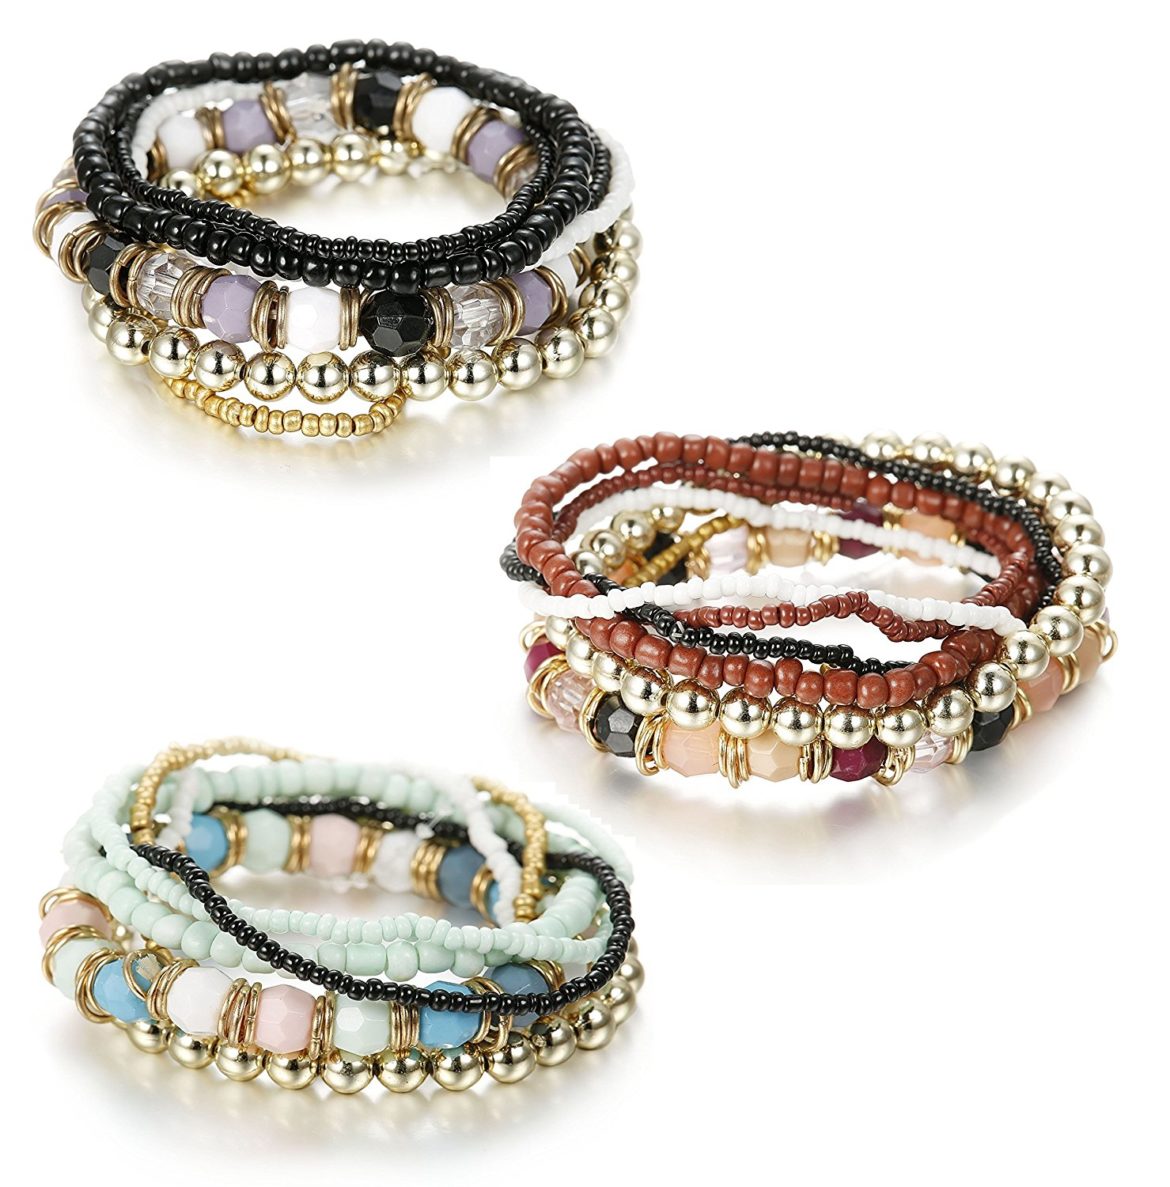 Besteel 7 PCS Boho Jewelry Beaded Bracelets for Women Men Link Wrist ...